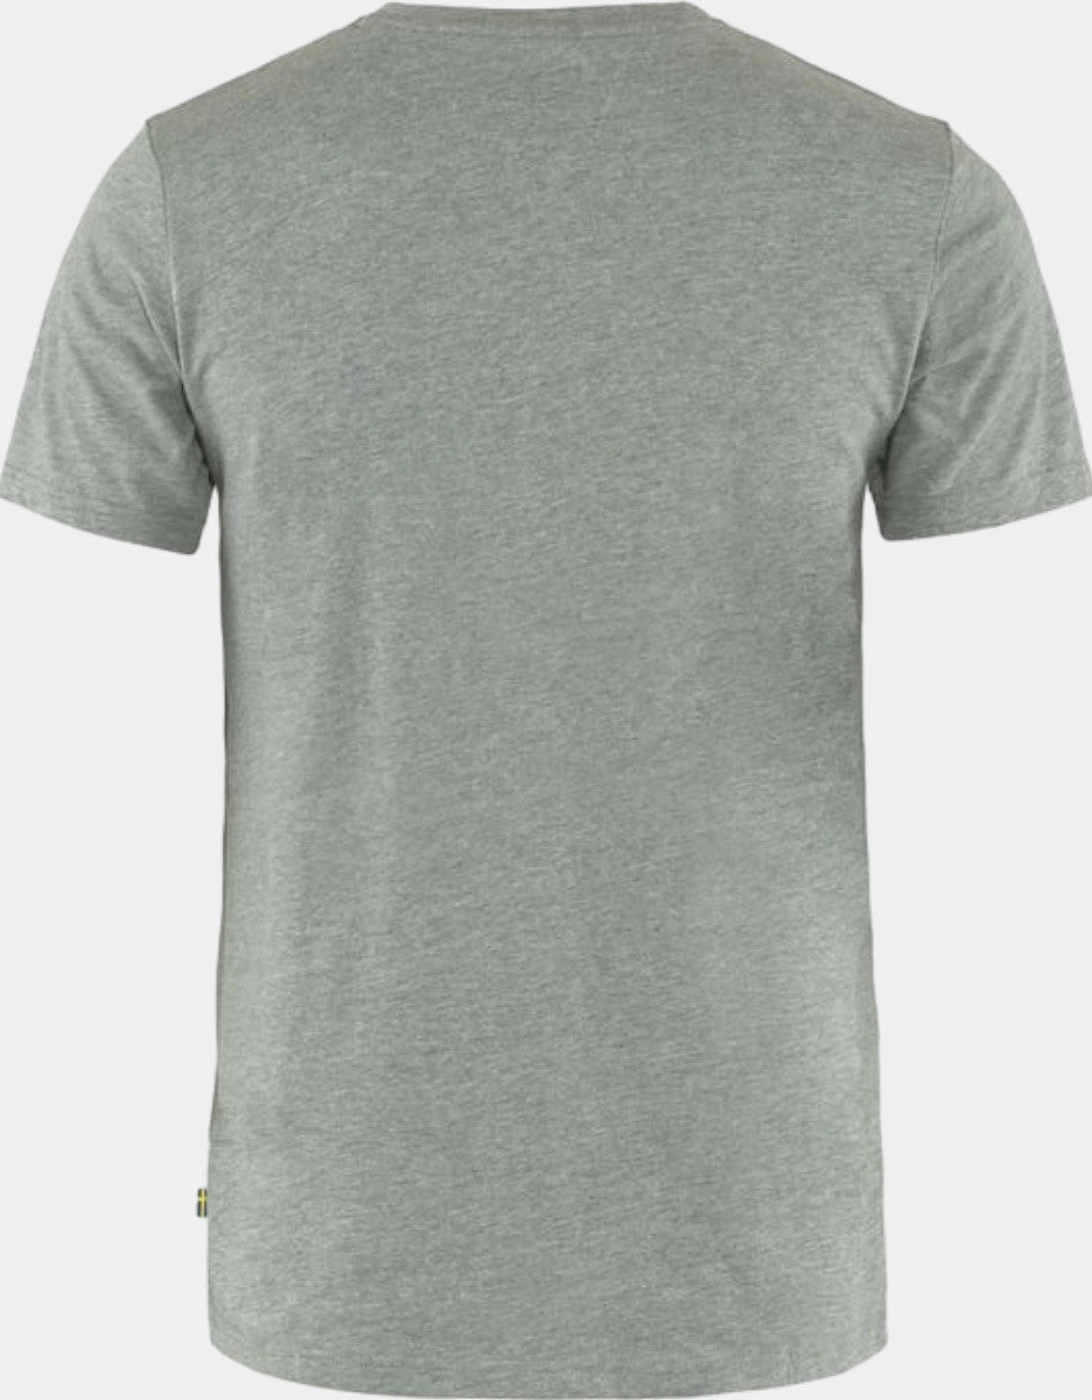 Logo T-Shirt - Grey Melange